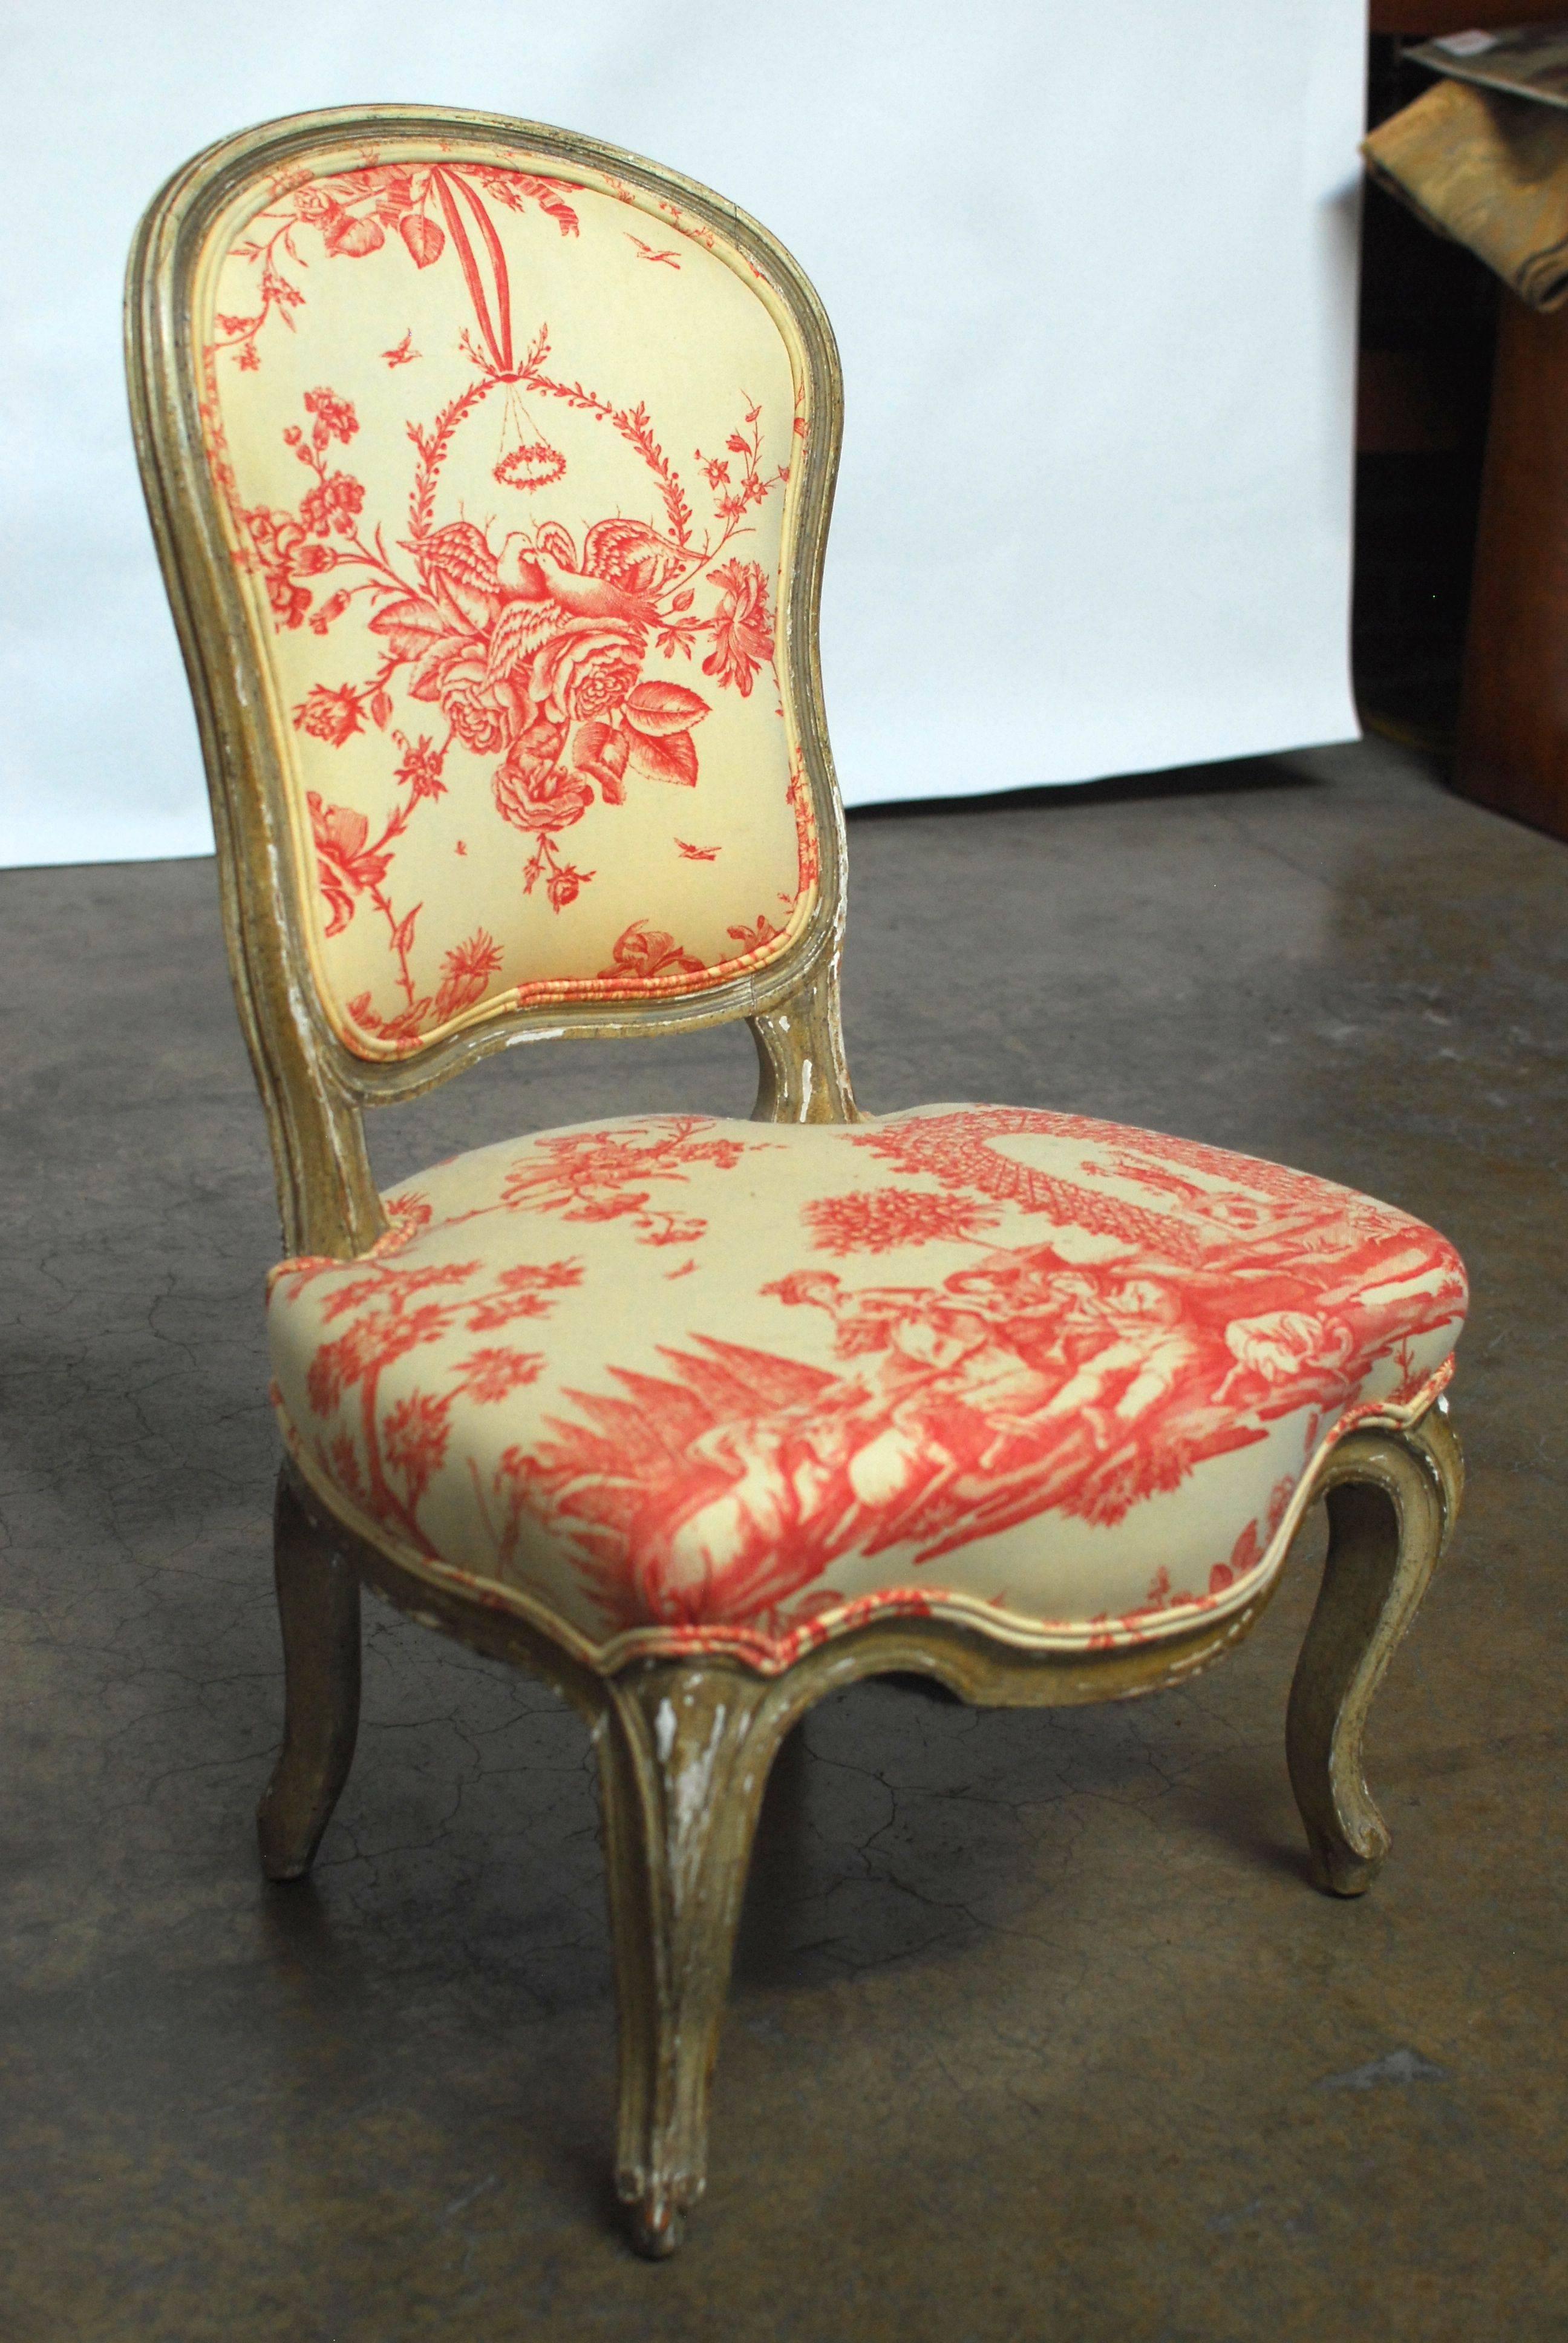 Chaise pantoufle ou boudoir de style Louis XV français, avec un cadre sculpté en serpentin et des pieds cabriole. Tapissé d'un tissu de toile rouge et crème avec une double bordure de passepoil. Le cadre a une finition d'origine non restaurée et une